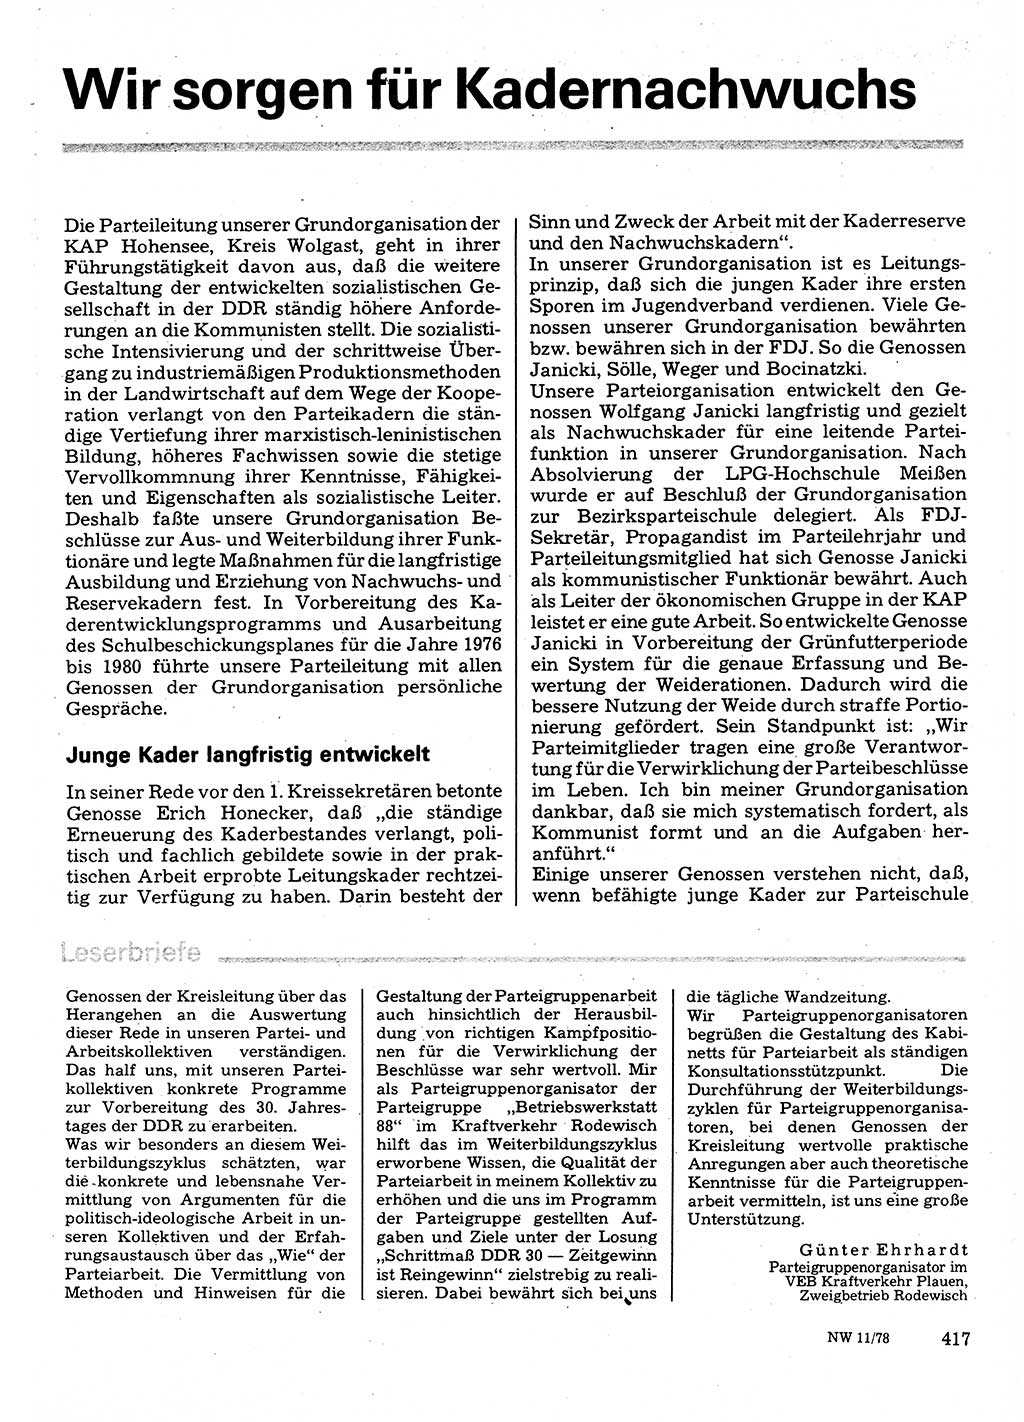 Neuer Weg (NW), Organ des Zentralkomitees (ZK) der SED (Sozialistische Einheitspartei Deutschlands) für Fragen des Parteilebens, 33. Jahrgang [Deutsche Demokratische Republik (DDR)] 1978, Seite 417 (NW ZK SED DDR 1978, S. 417)